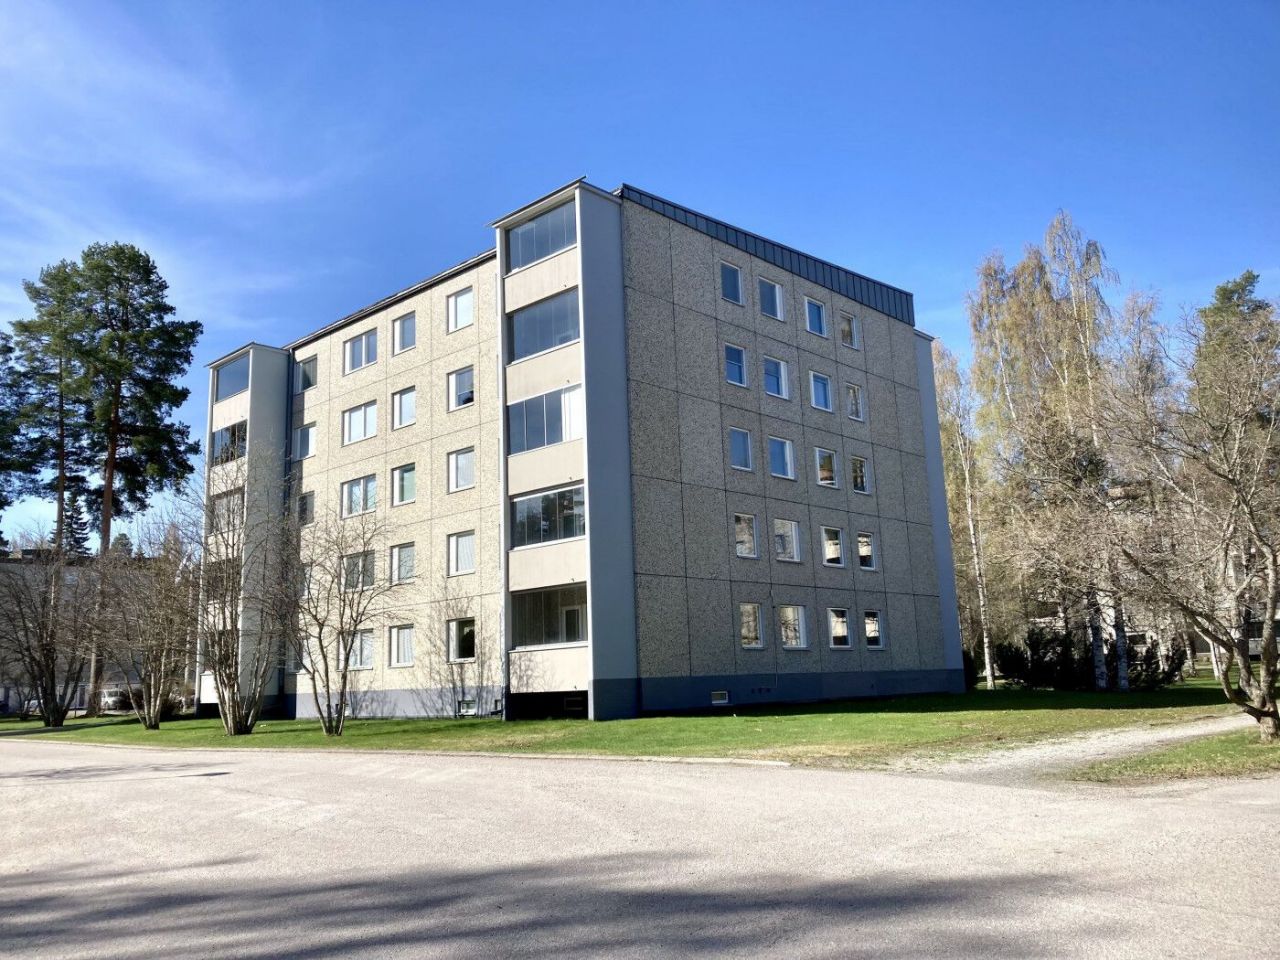 Flat in Mänttä, Finland, 33 sq.m - picture 1